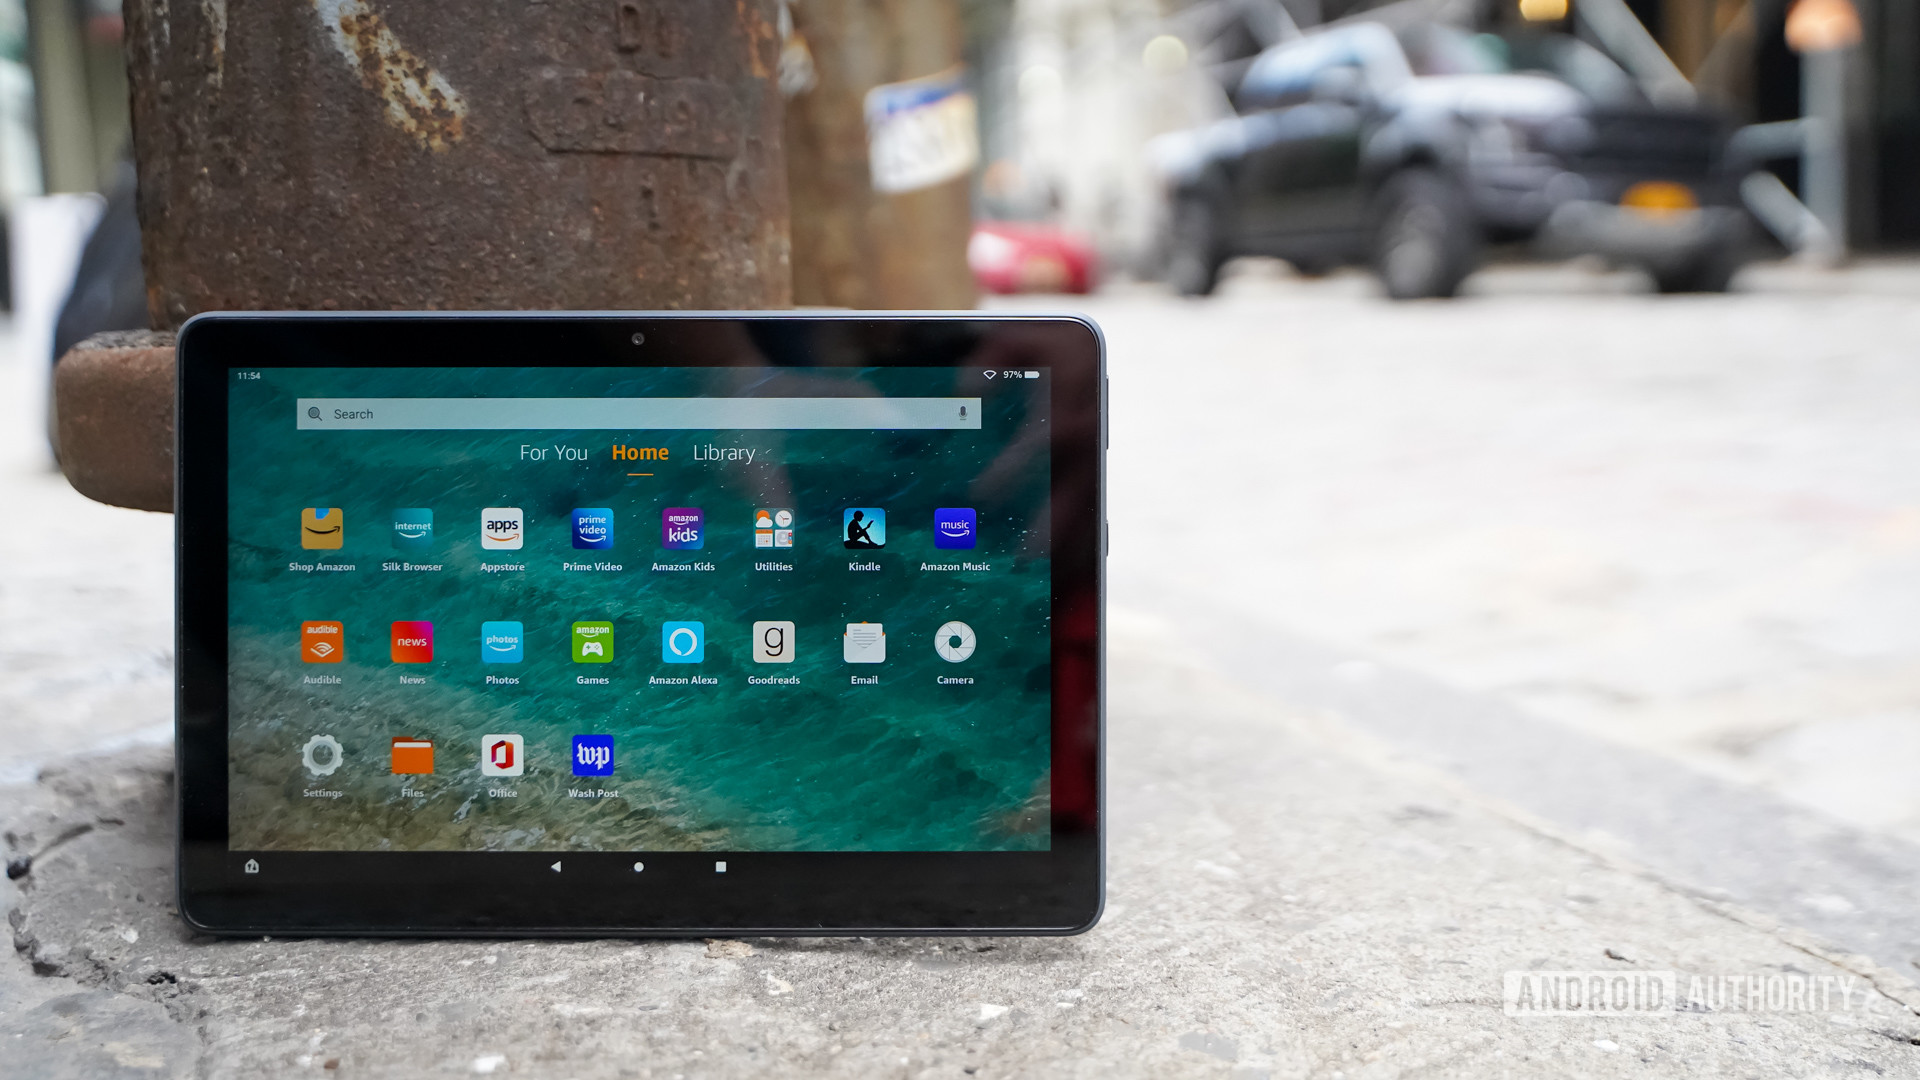 Amazon Fire HD 10 Plus in tablet deals